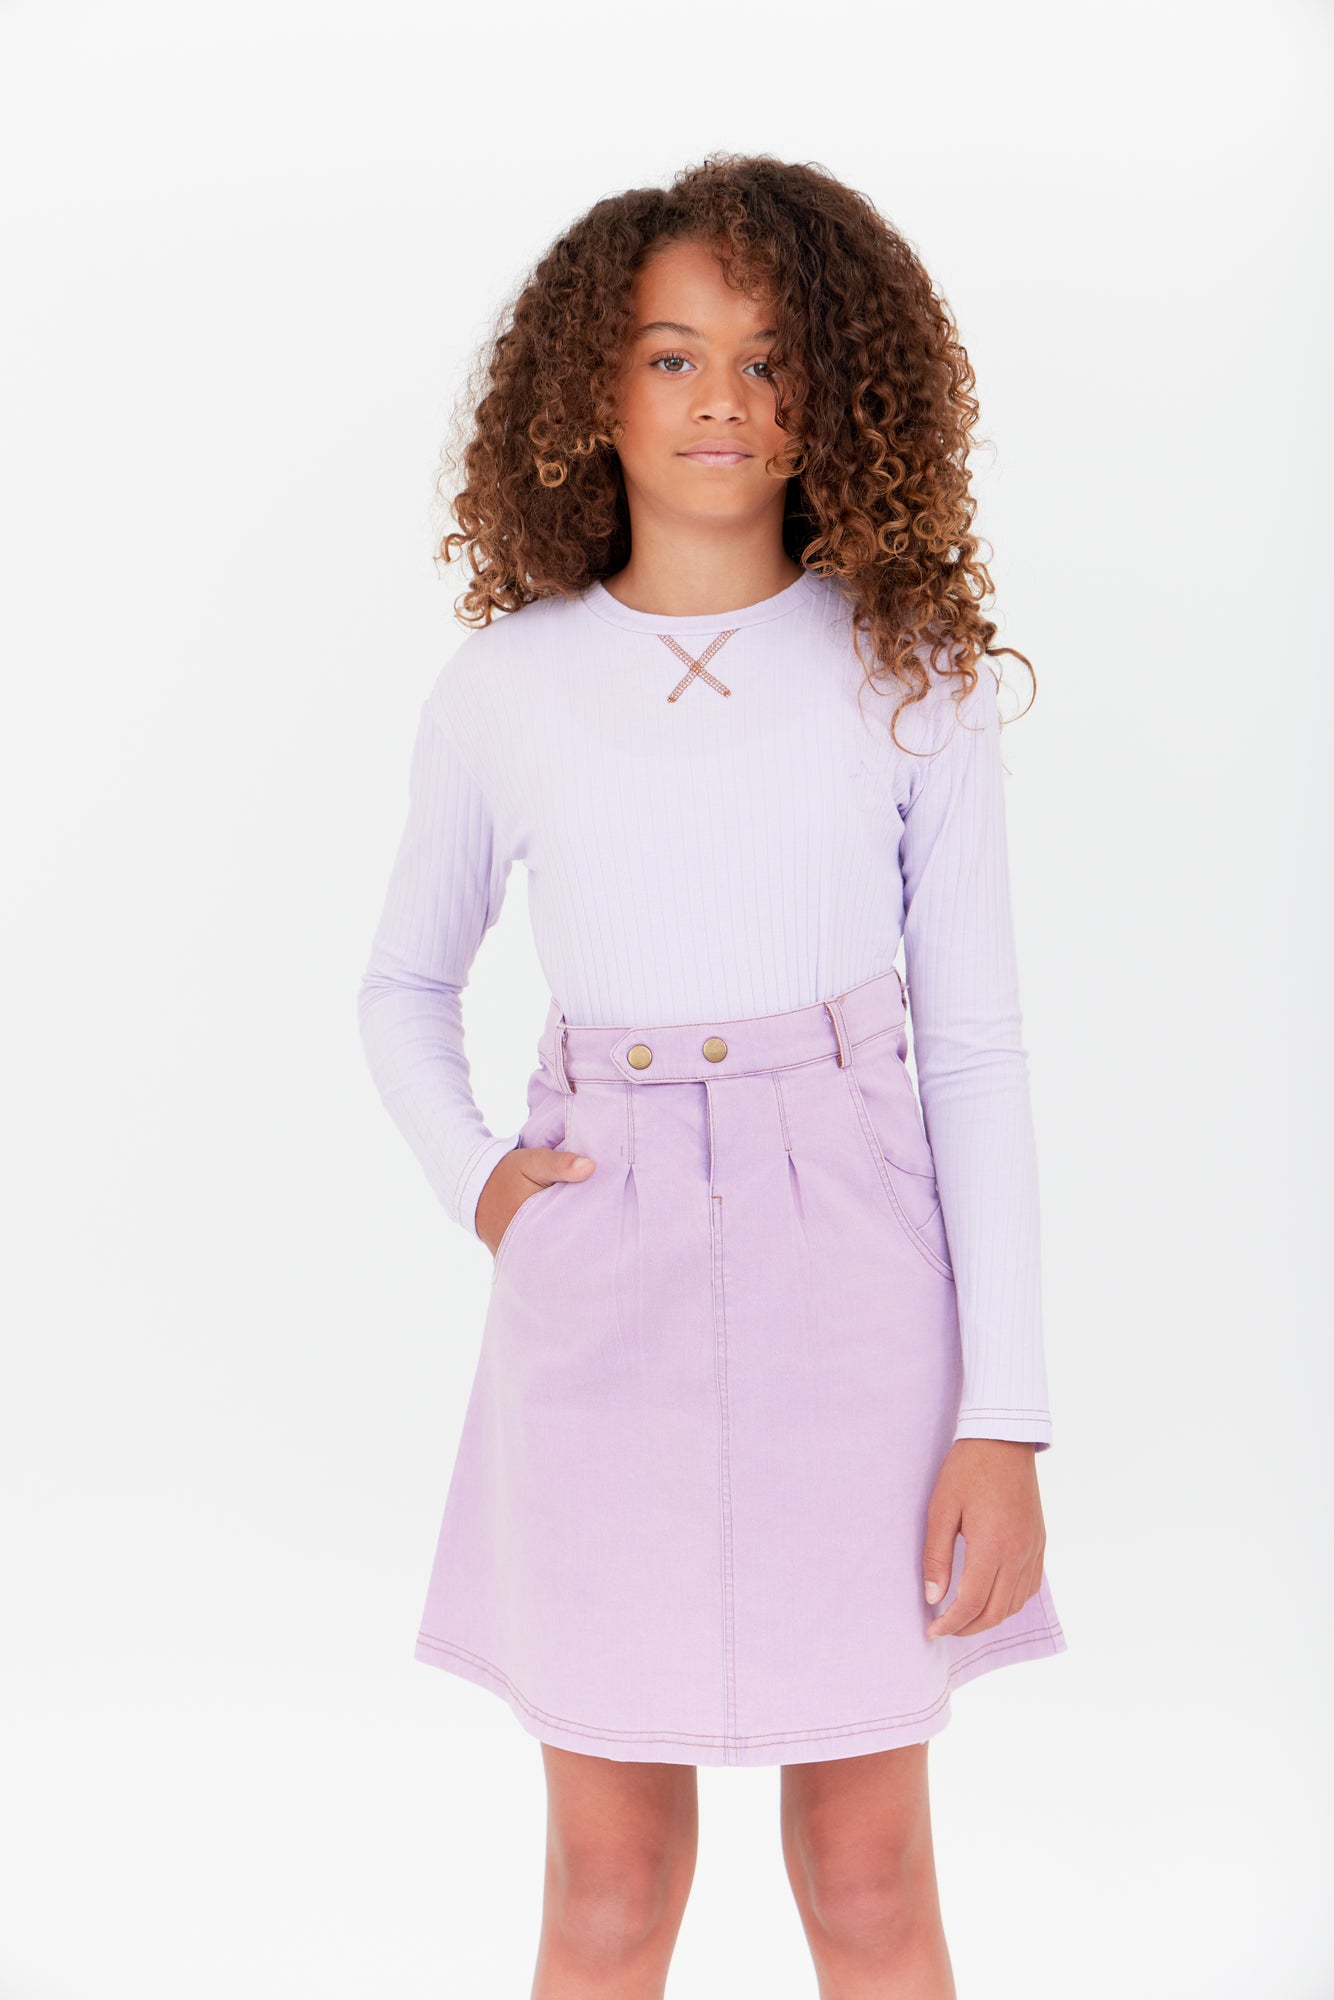 Cato Fashions | Cato Girls Violet Denim Skirt